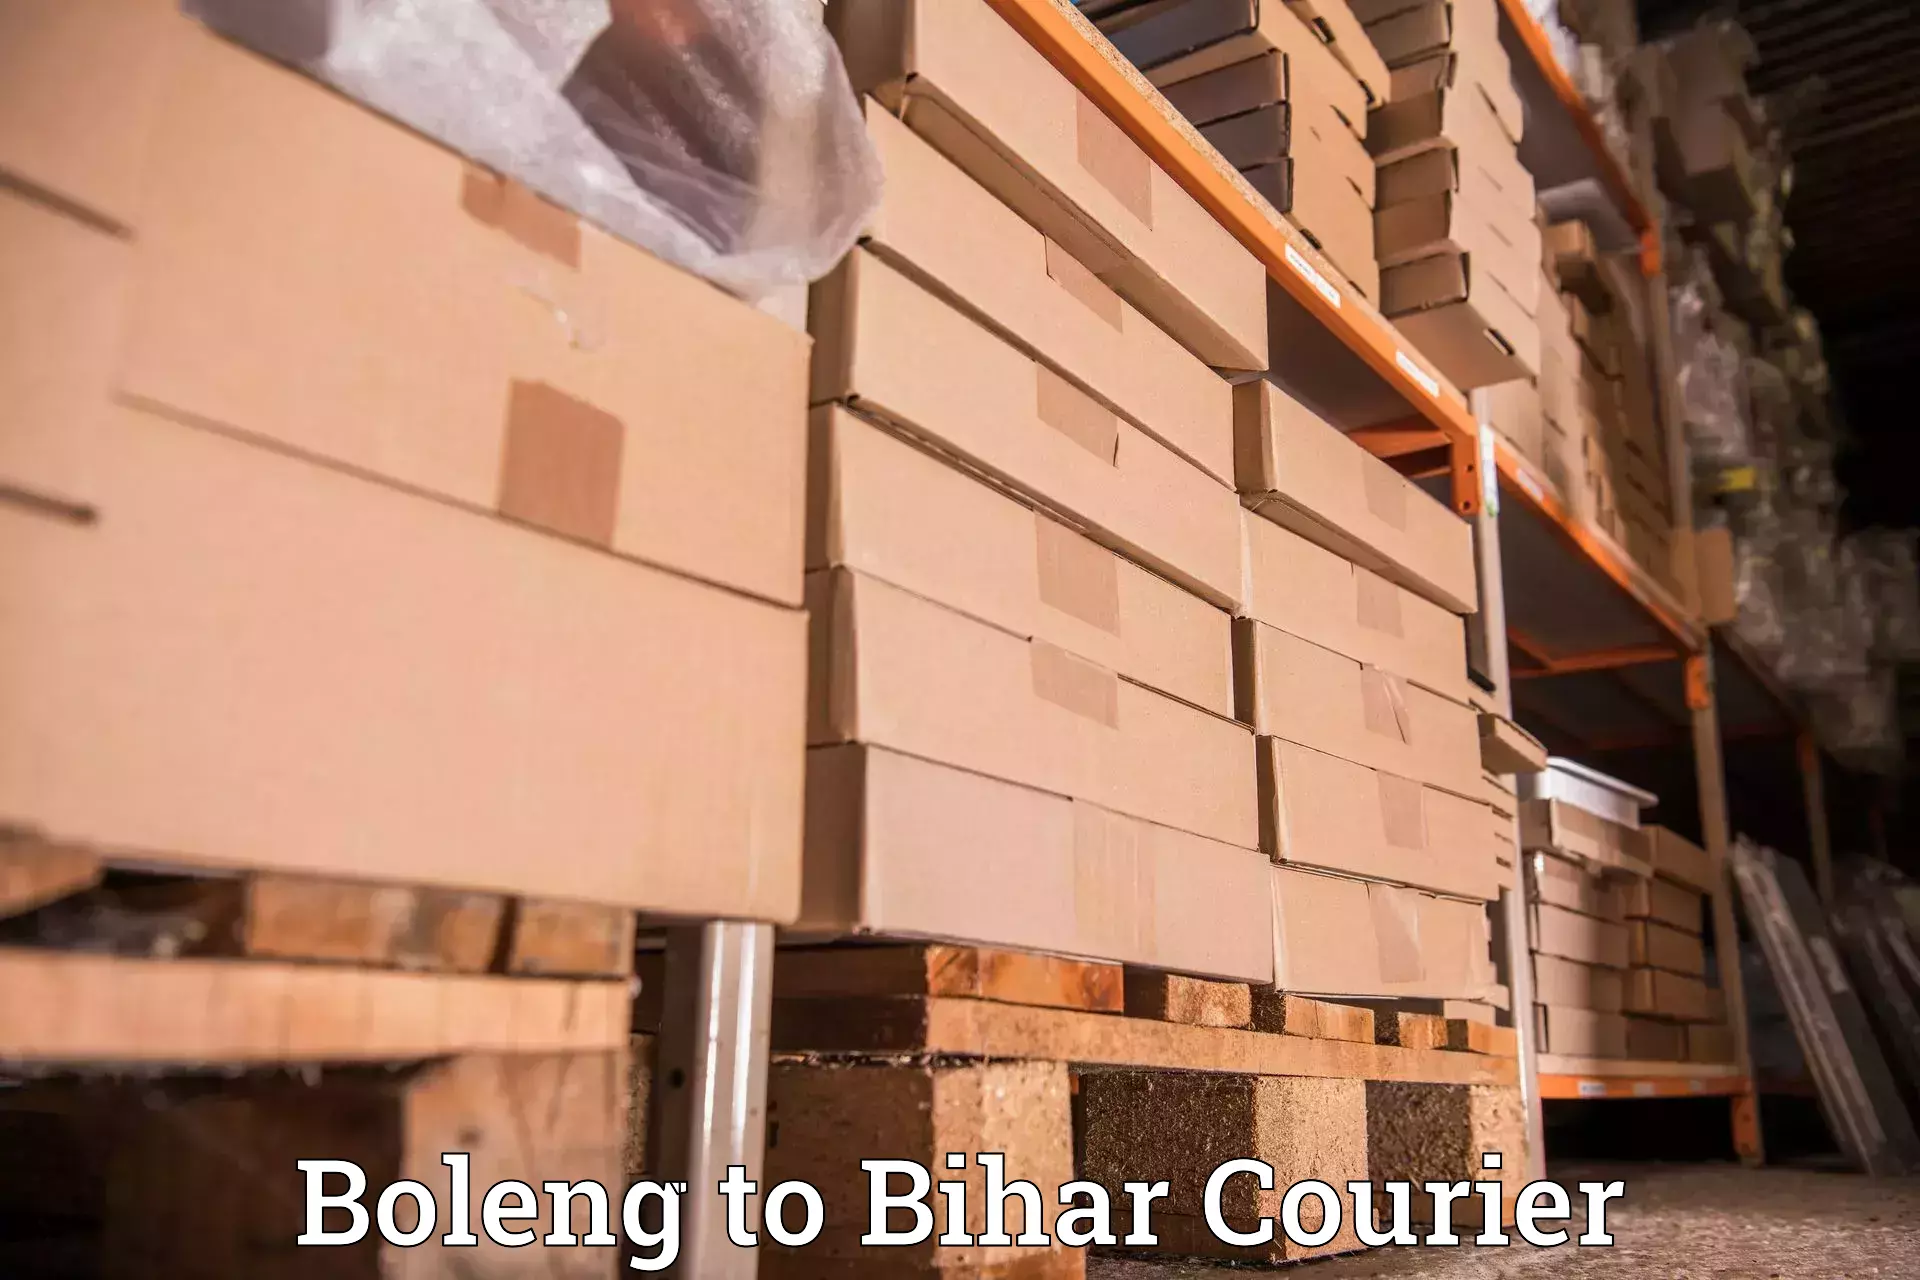 Easy access courier services in Boleng to Kursela